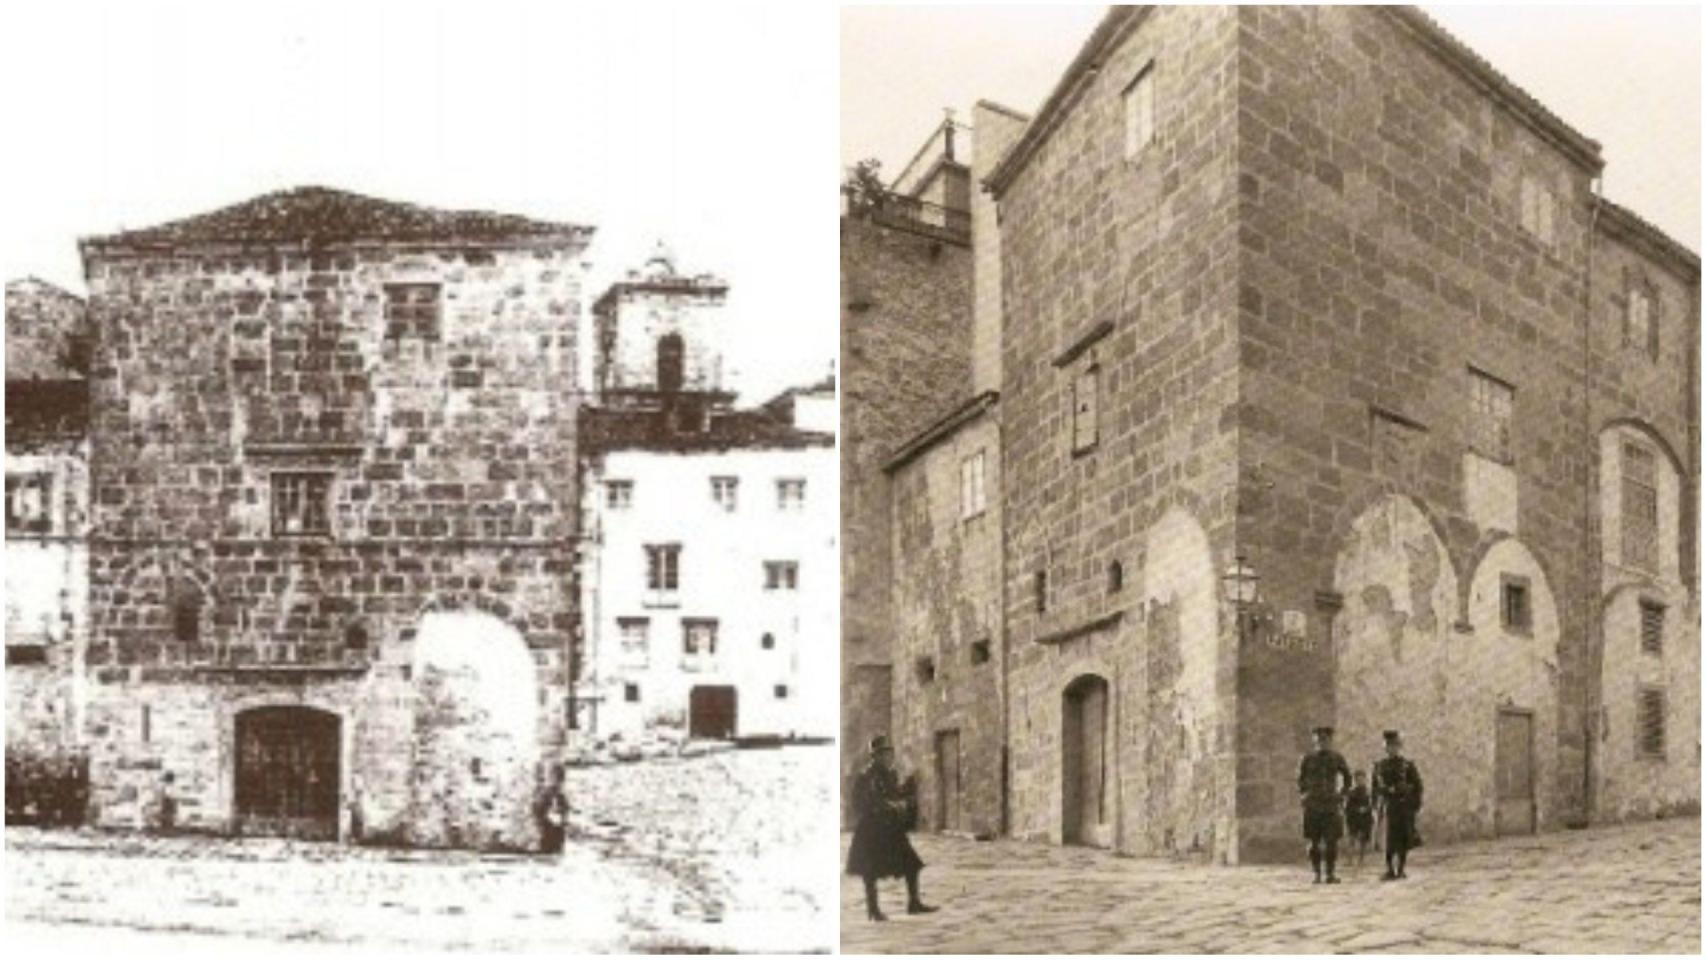 La Casa Gótica: el palacio medieval que desapareció en A Coruña